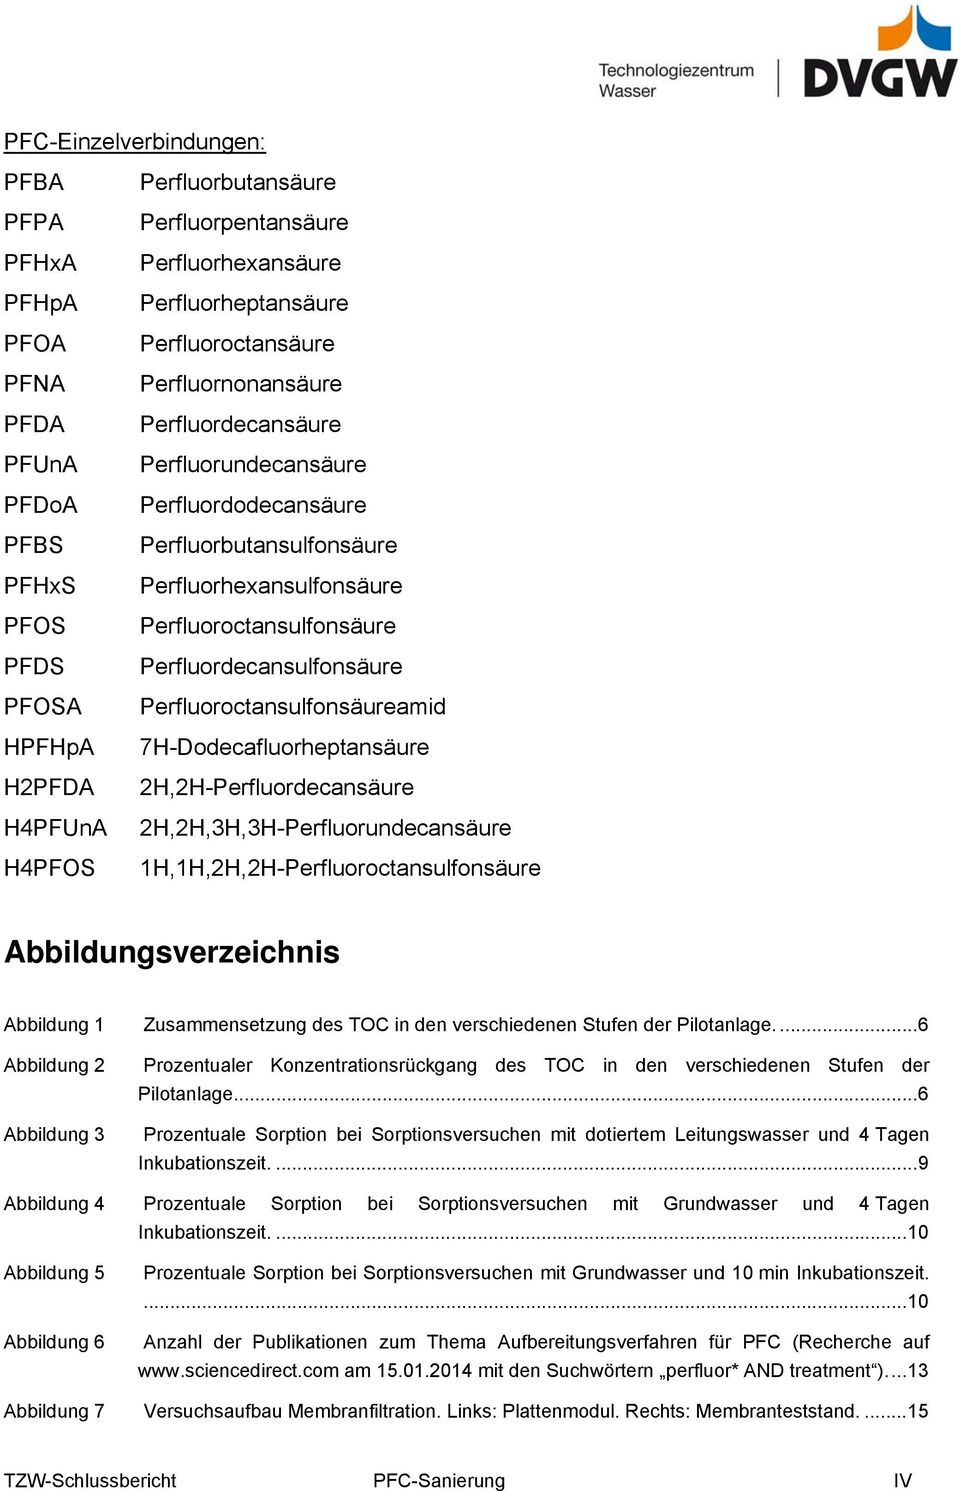 Perfluordecansulfonsäure Perfluoroctansulfonsäureamid 7H-Dodecafluorheptansäure 2H,2H-Perfluordecansäure 2H,2H,3H,3H-Perfluorundecansäure 1H,1H,2H,2H-Perfluoroctansulfonsäure Abbildungsverzeichnis